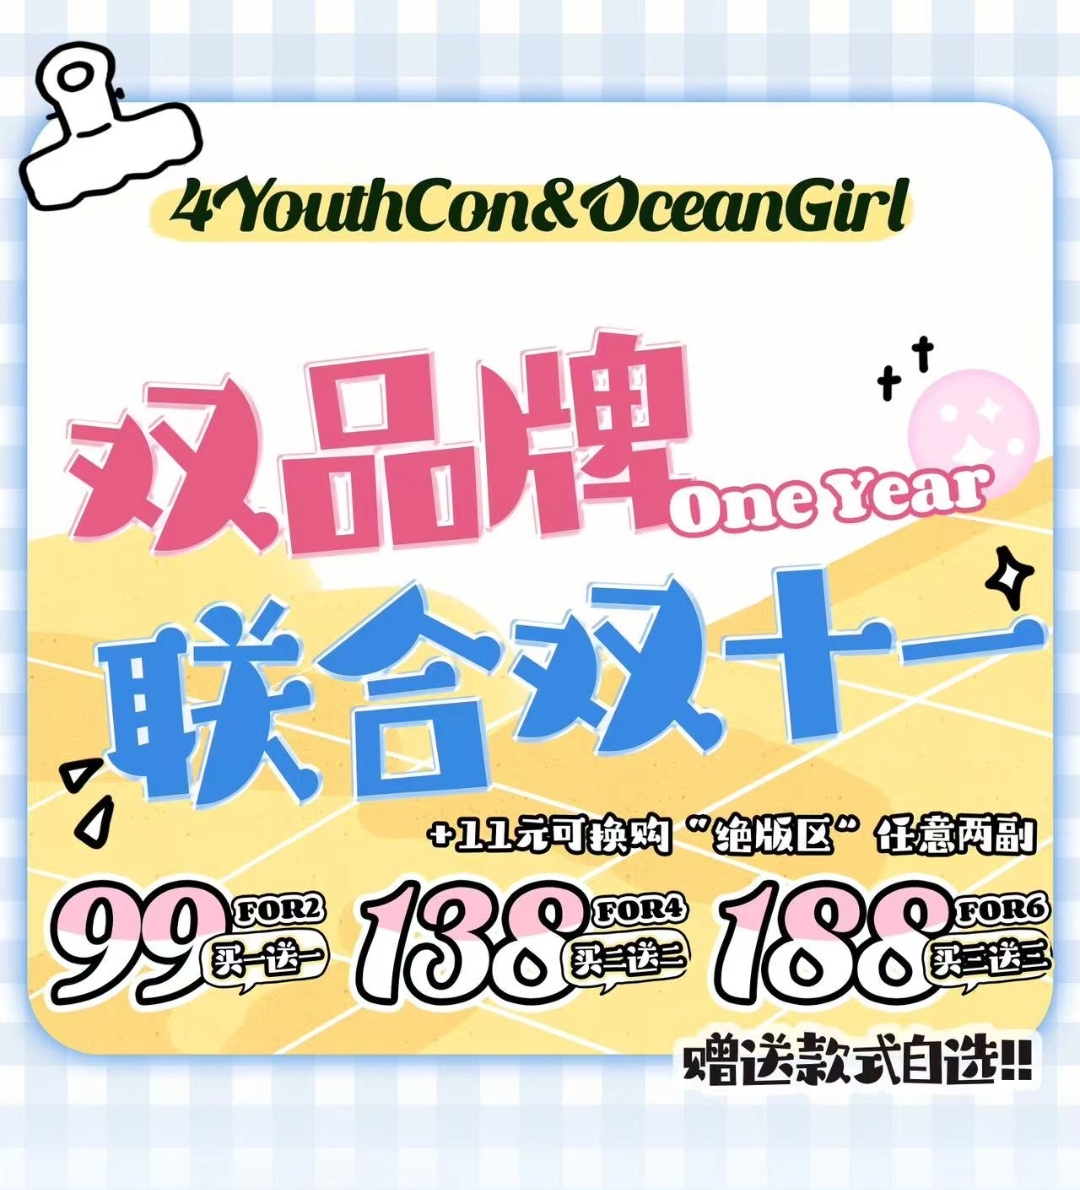 【年抛】4Youthcon&Oceangirl 双品牌联合双十一 任意组合 低价风暴